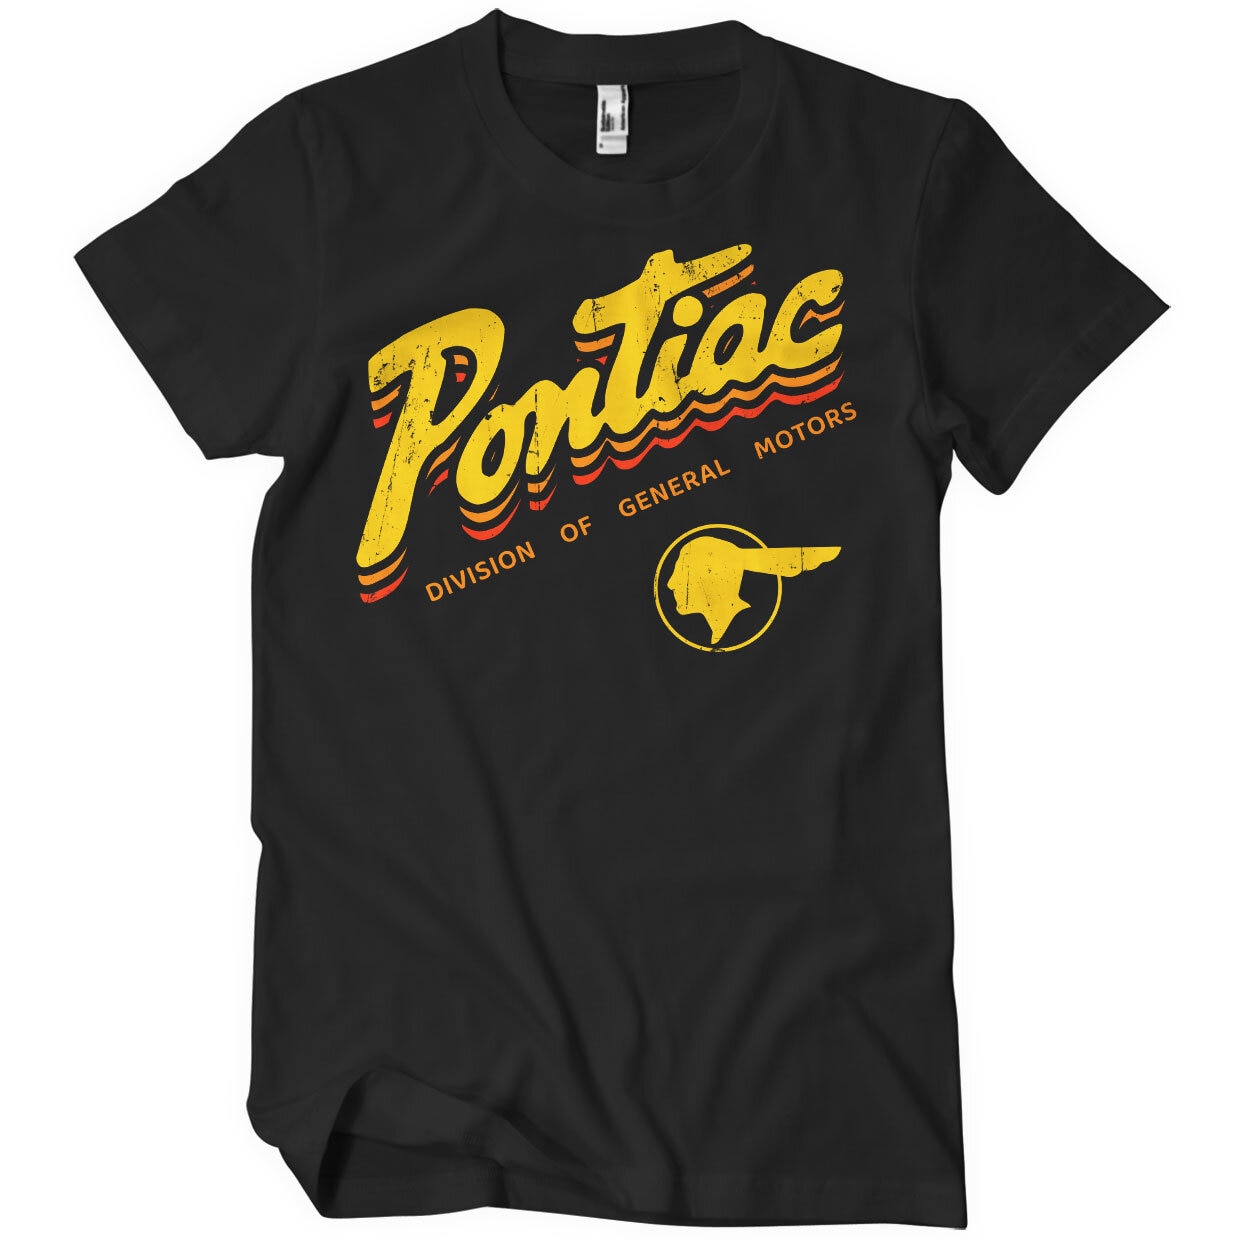 Pontiac Division Of General Motors T-Shirt